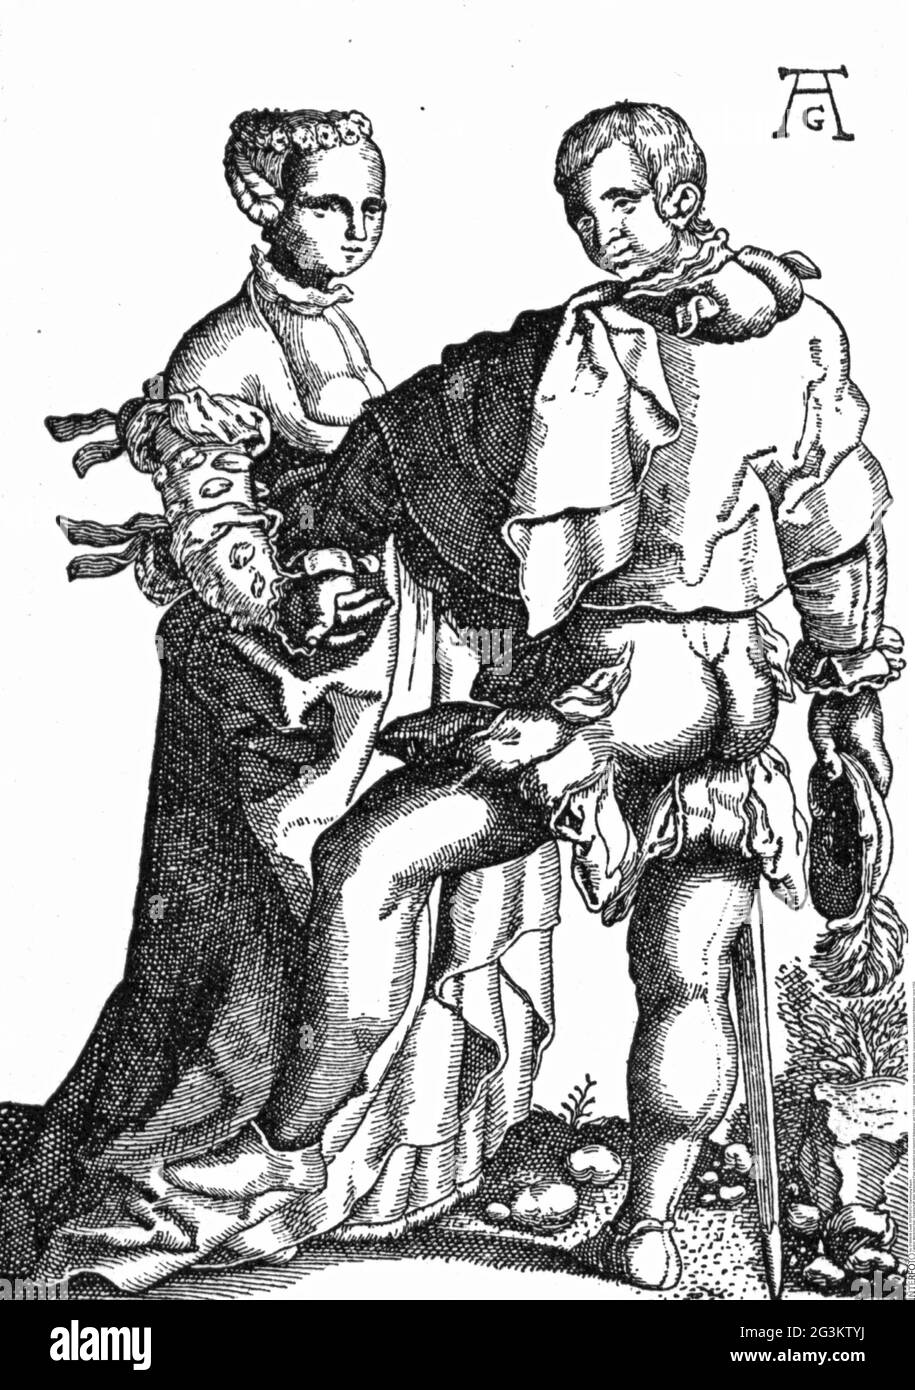 Menschen, Gesellschaft, Adel, tanzendes Paar, Kupferstich von Heinrich Aldegrever, um 1550, DAS KÜNSTLERSCHUTZRECHT MUSS NICHT FREIGEGEBEN WERDEN Stockfoto